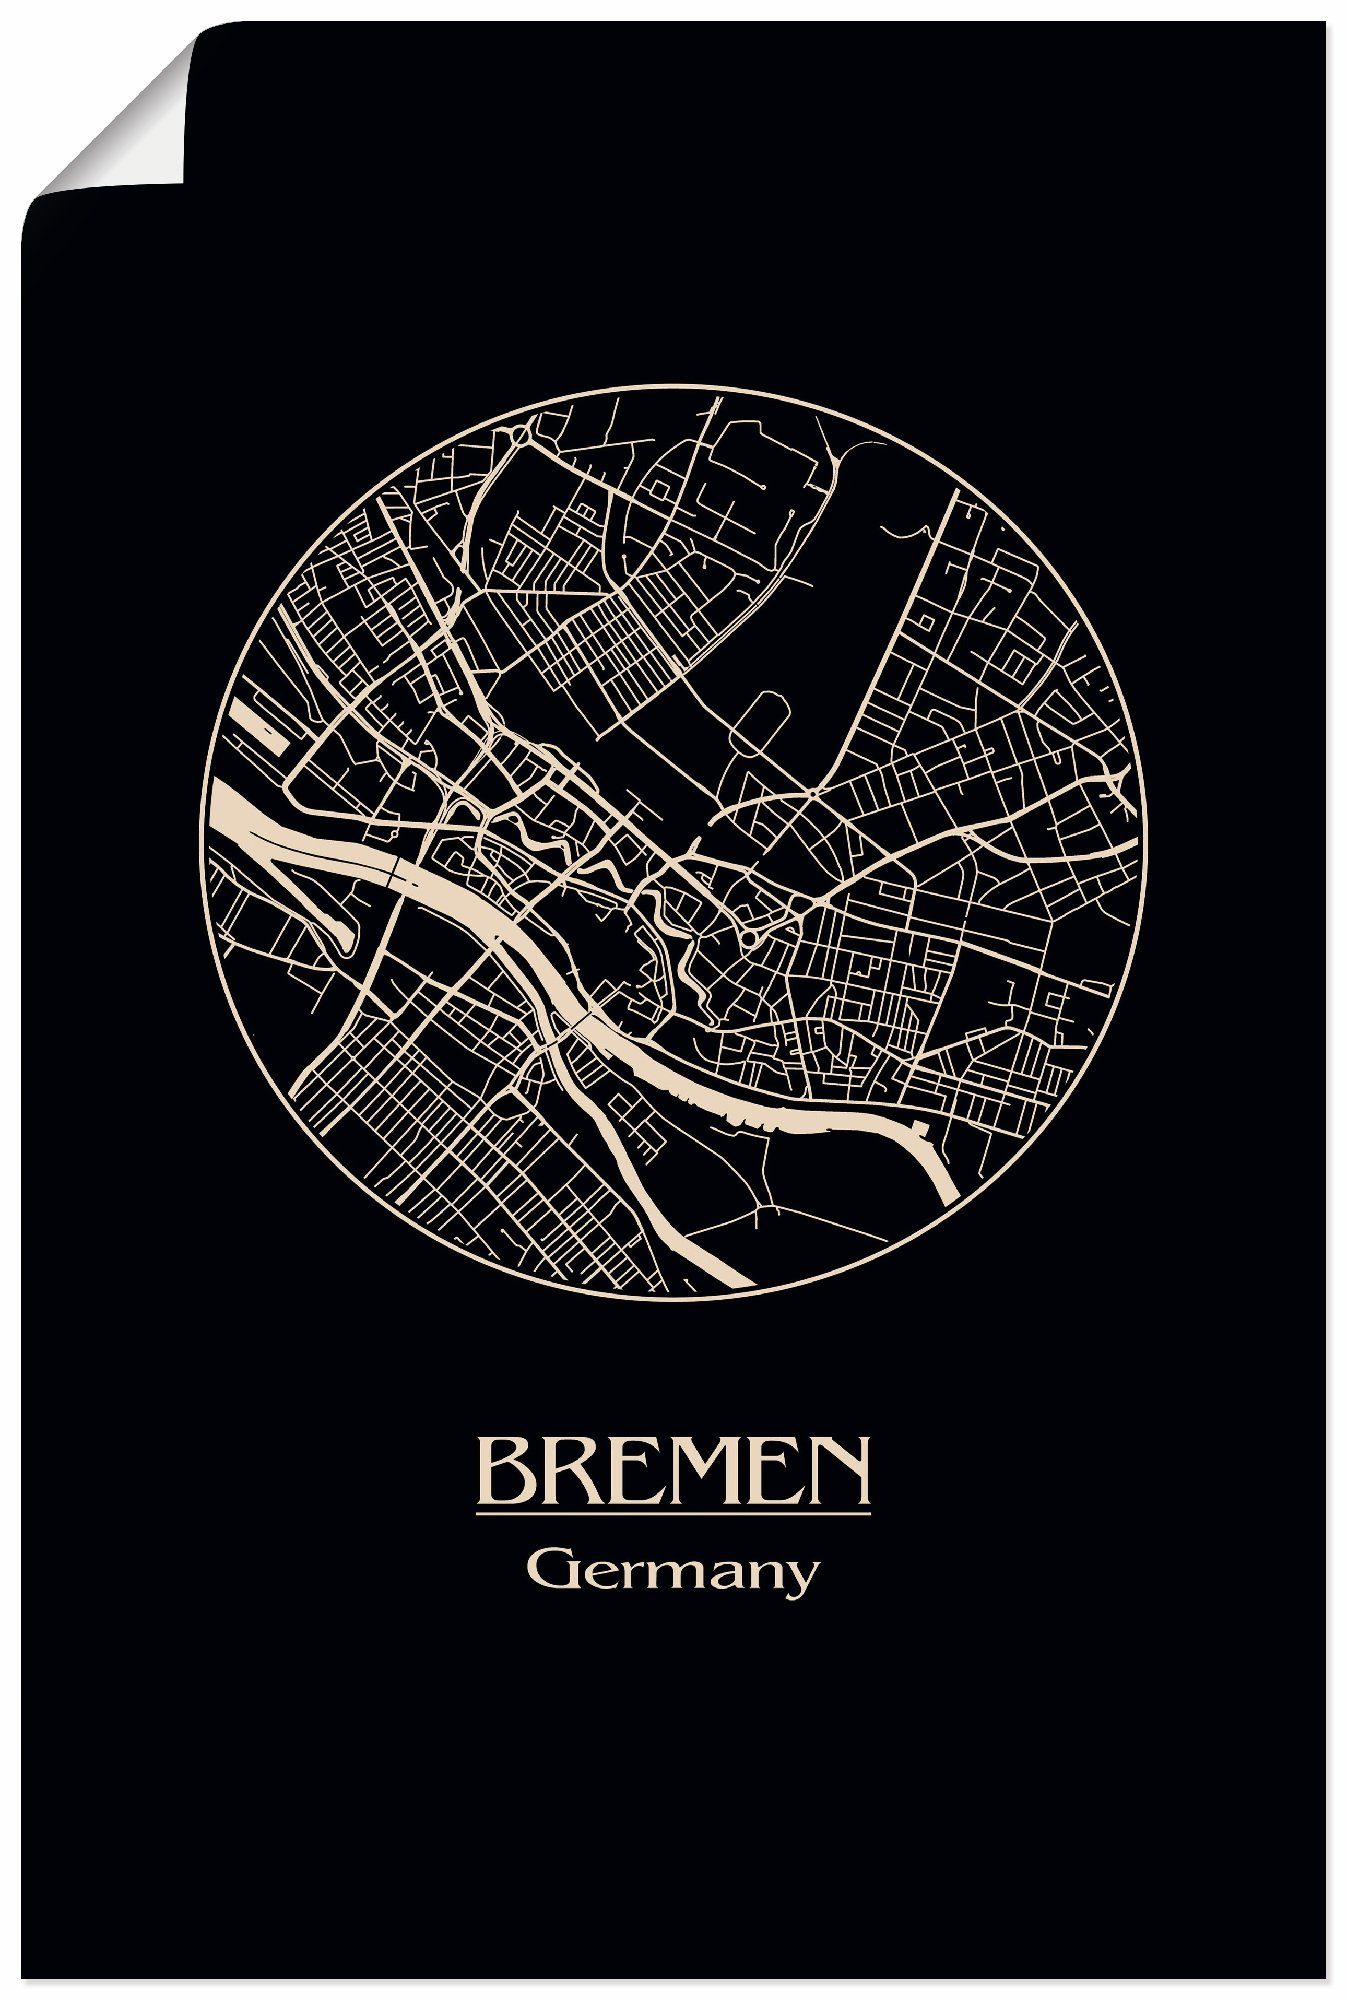 Artland Artprint Retro kaart Bremen Duitsland cirkel in vele afmetingen & productsoorten - artprint van aluminium / artprint voor buiten, artprint op linnen, poster, muursticker /